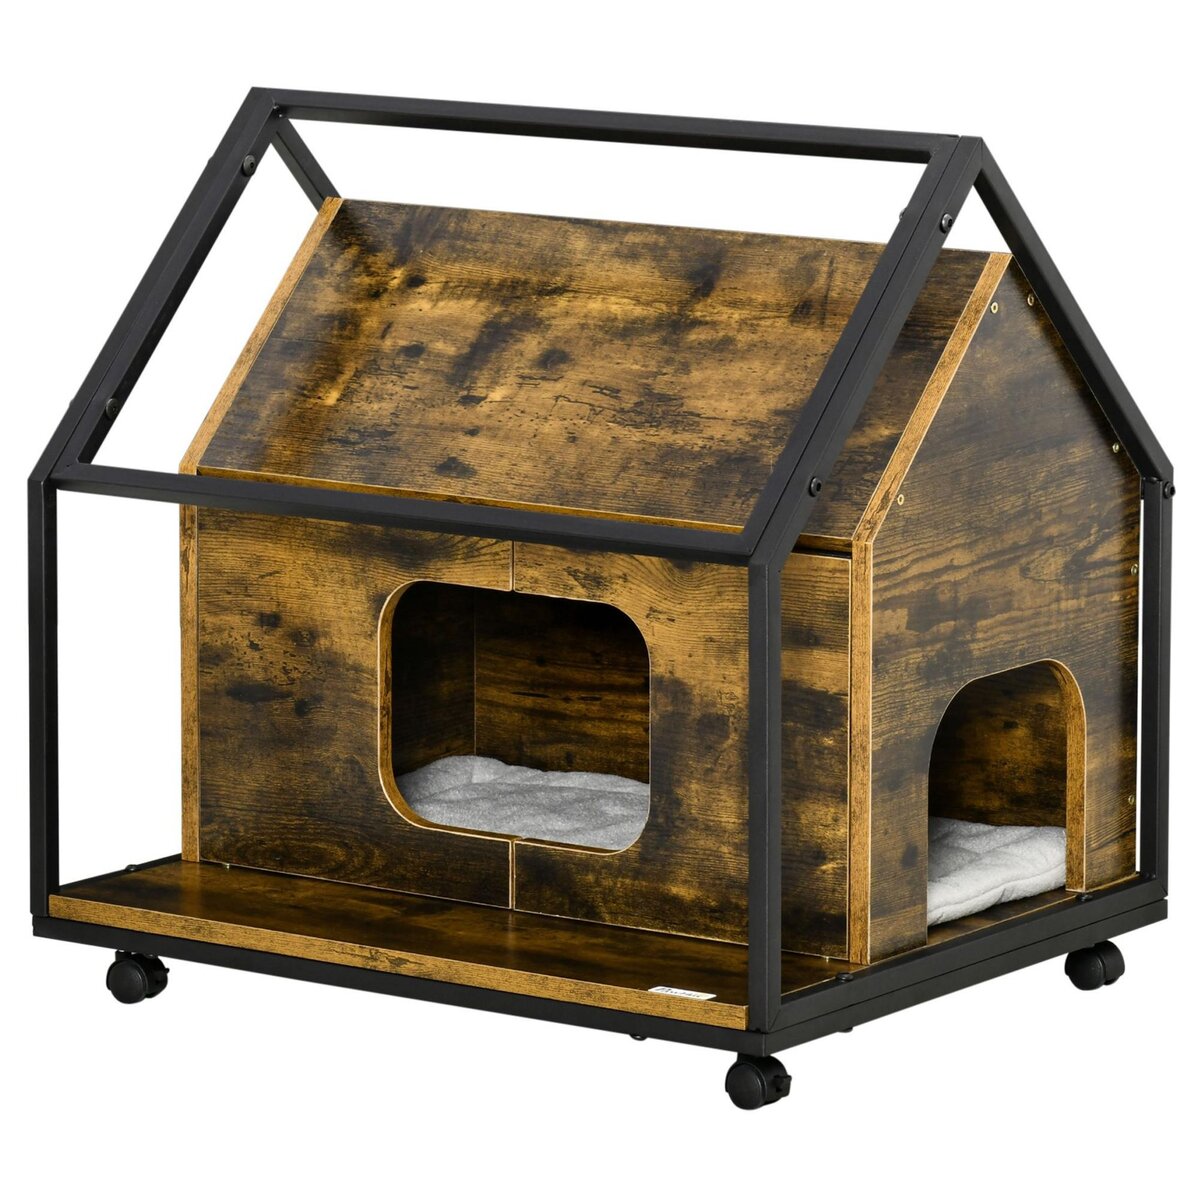 PAWHUT Maison pour chat design industriel - niche chat sur roulettes - grand coussin inclus - double porte et sortie - châssis acier noir aspect bois vieilli